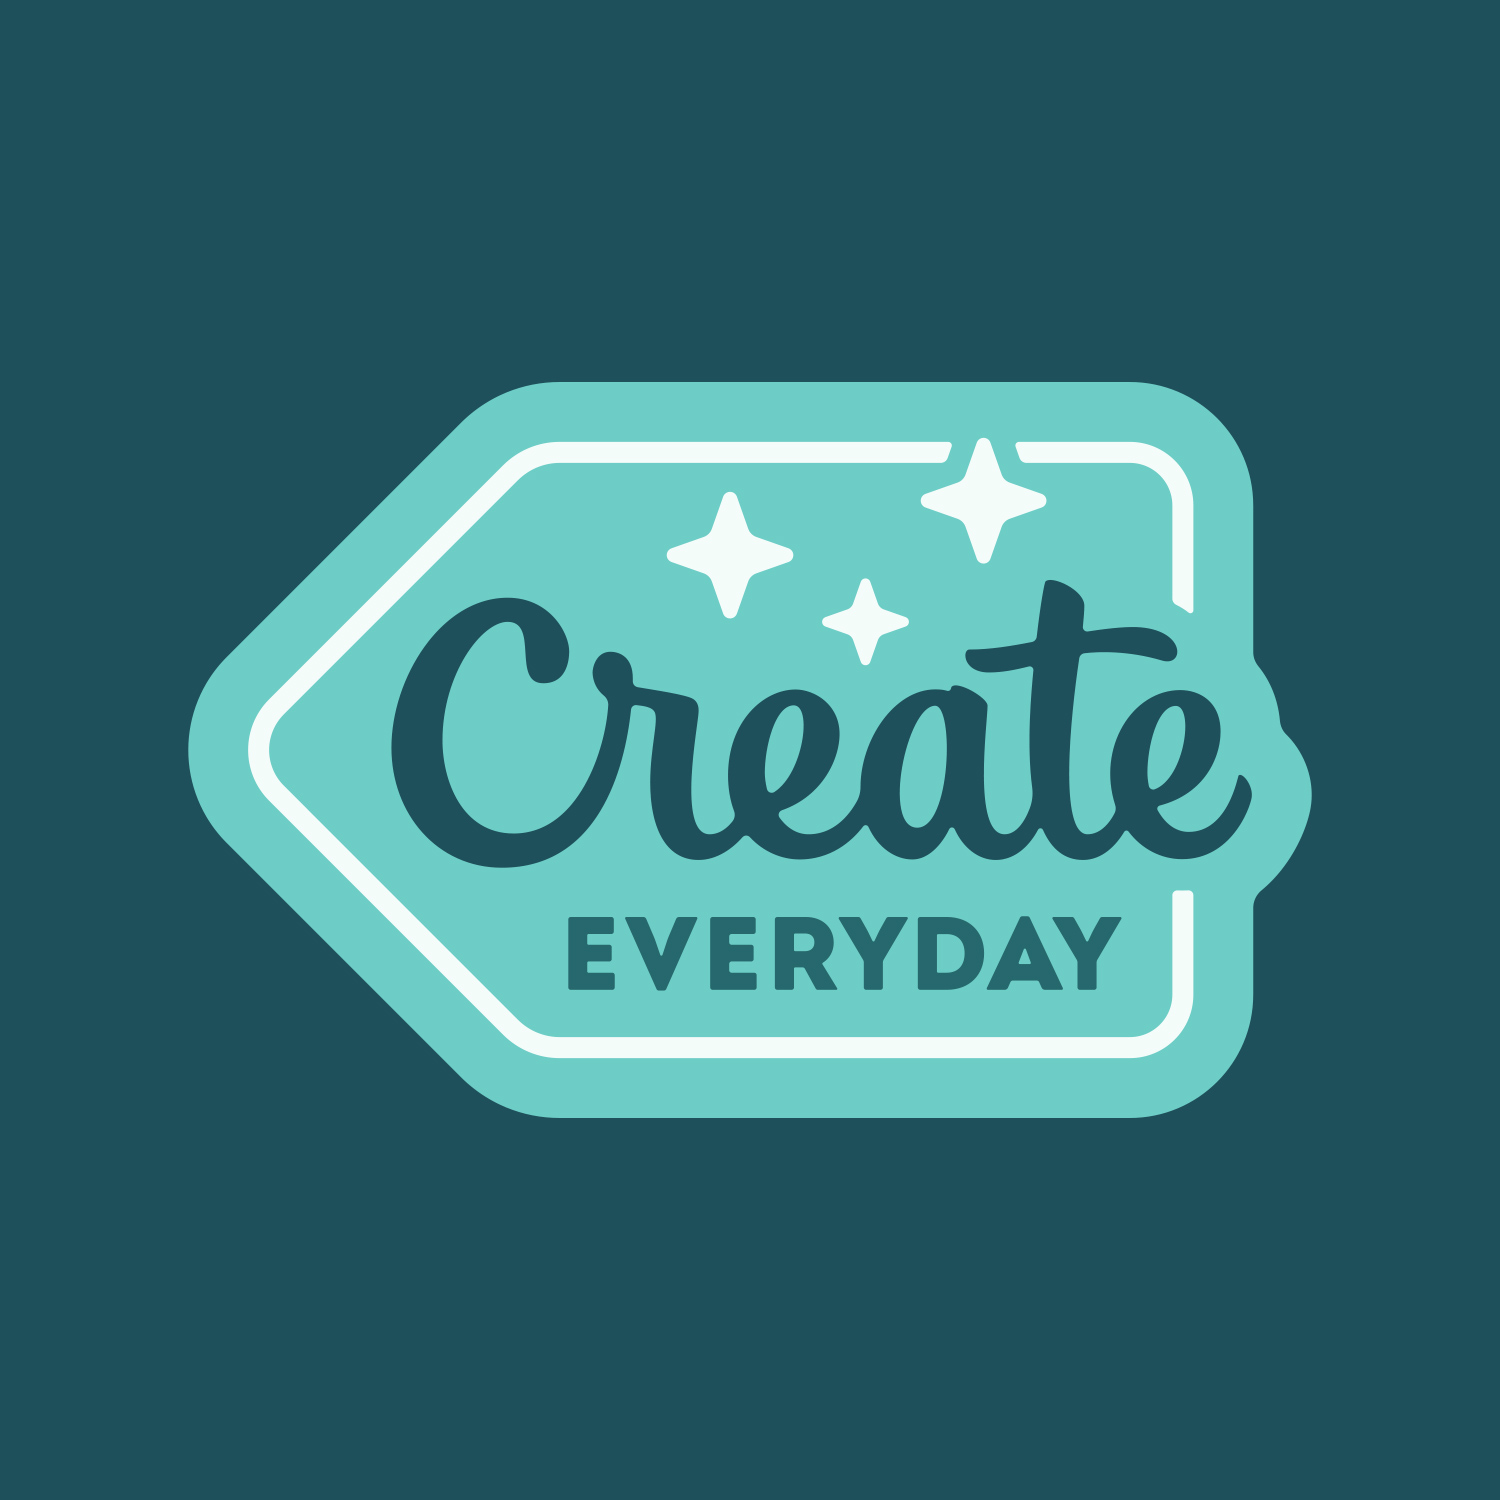 badge reading "create everyday"